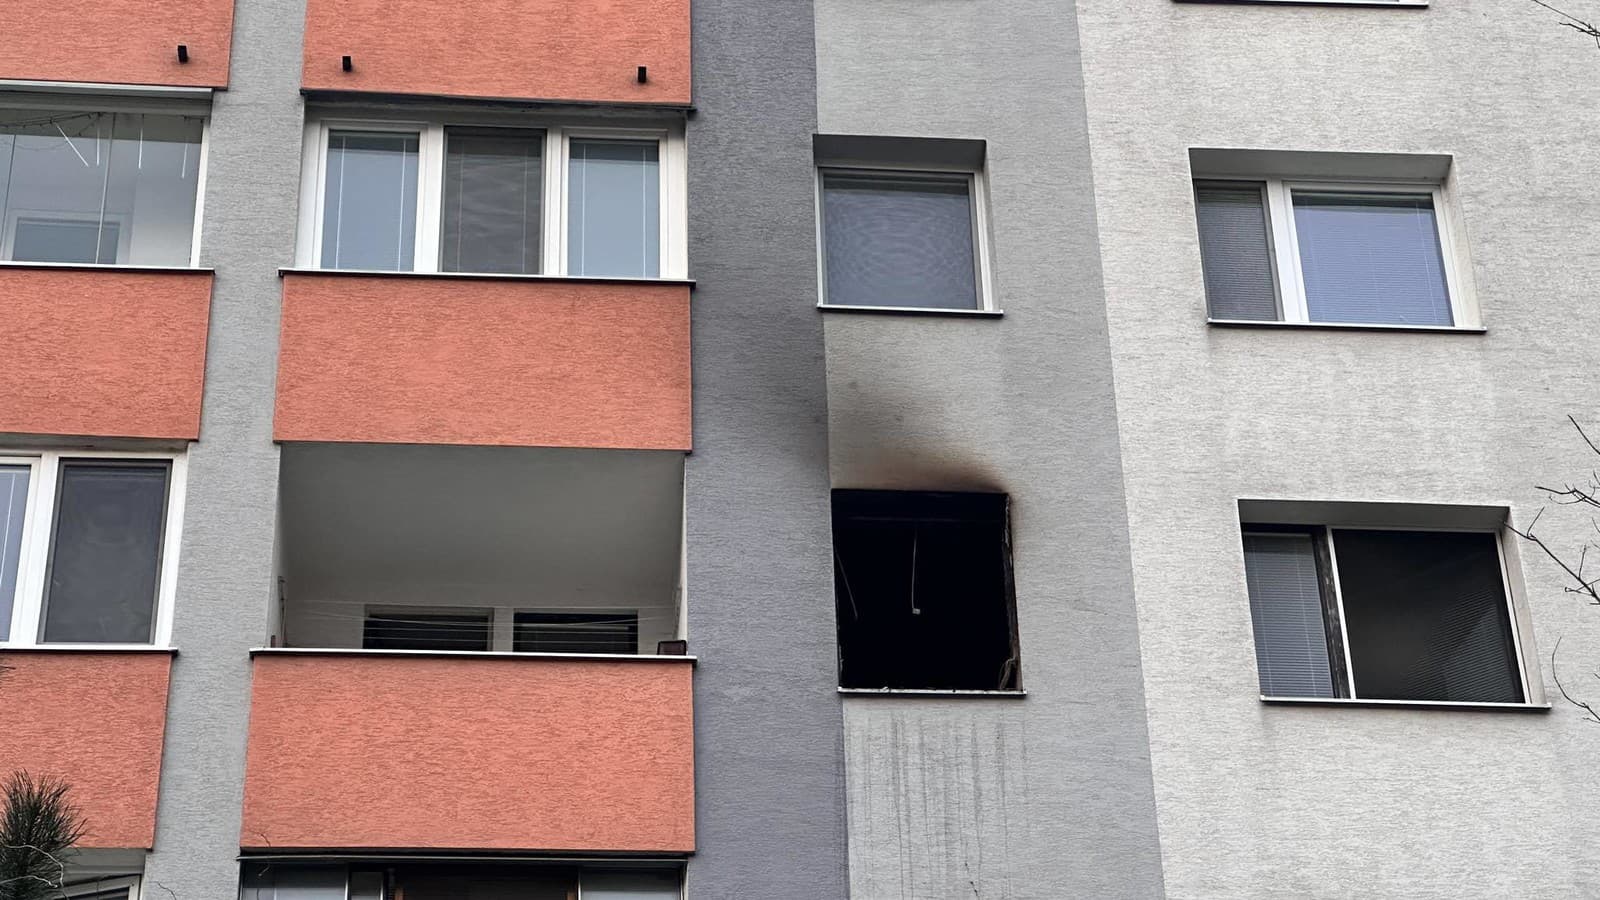 Požiar v jednom z bytov v Petržalke